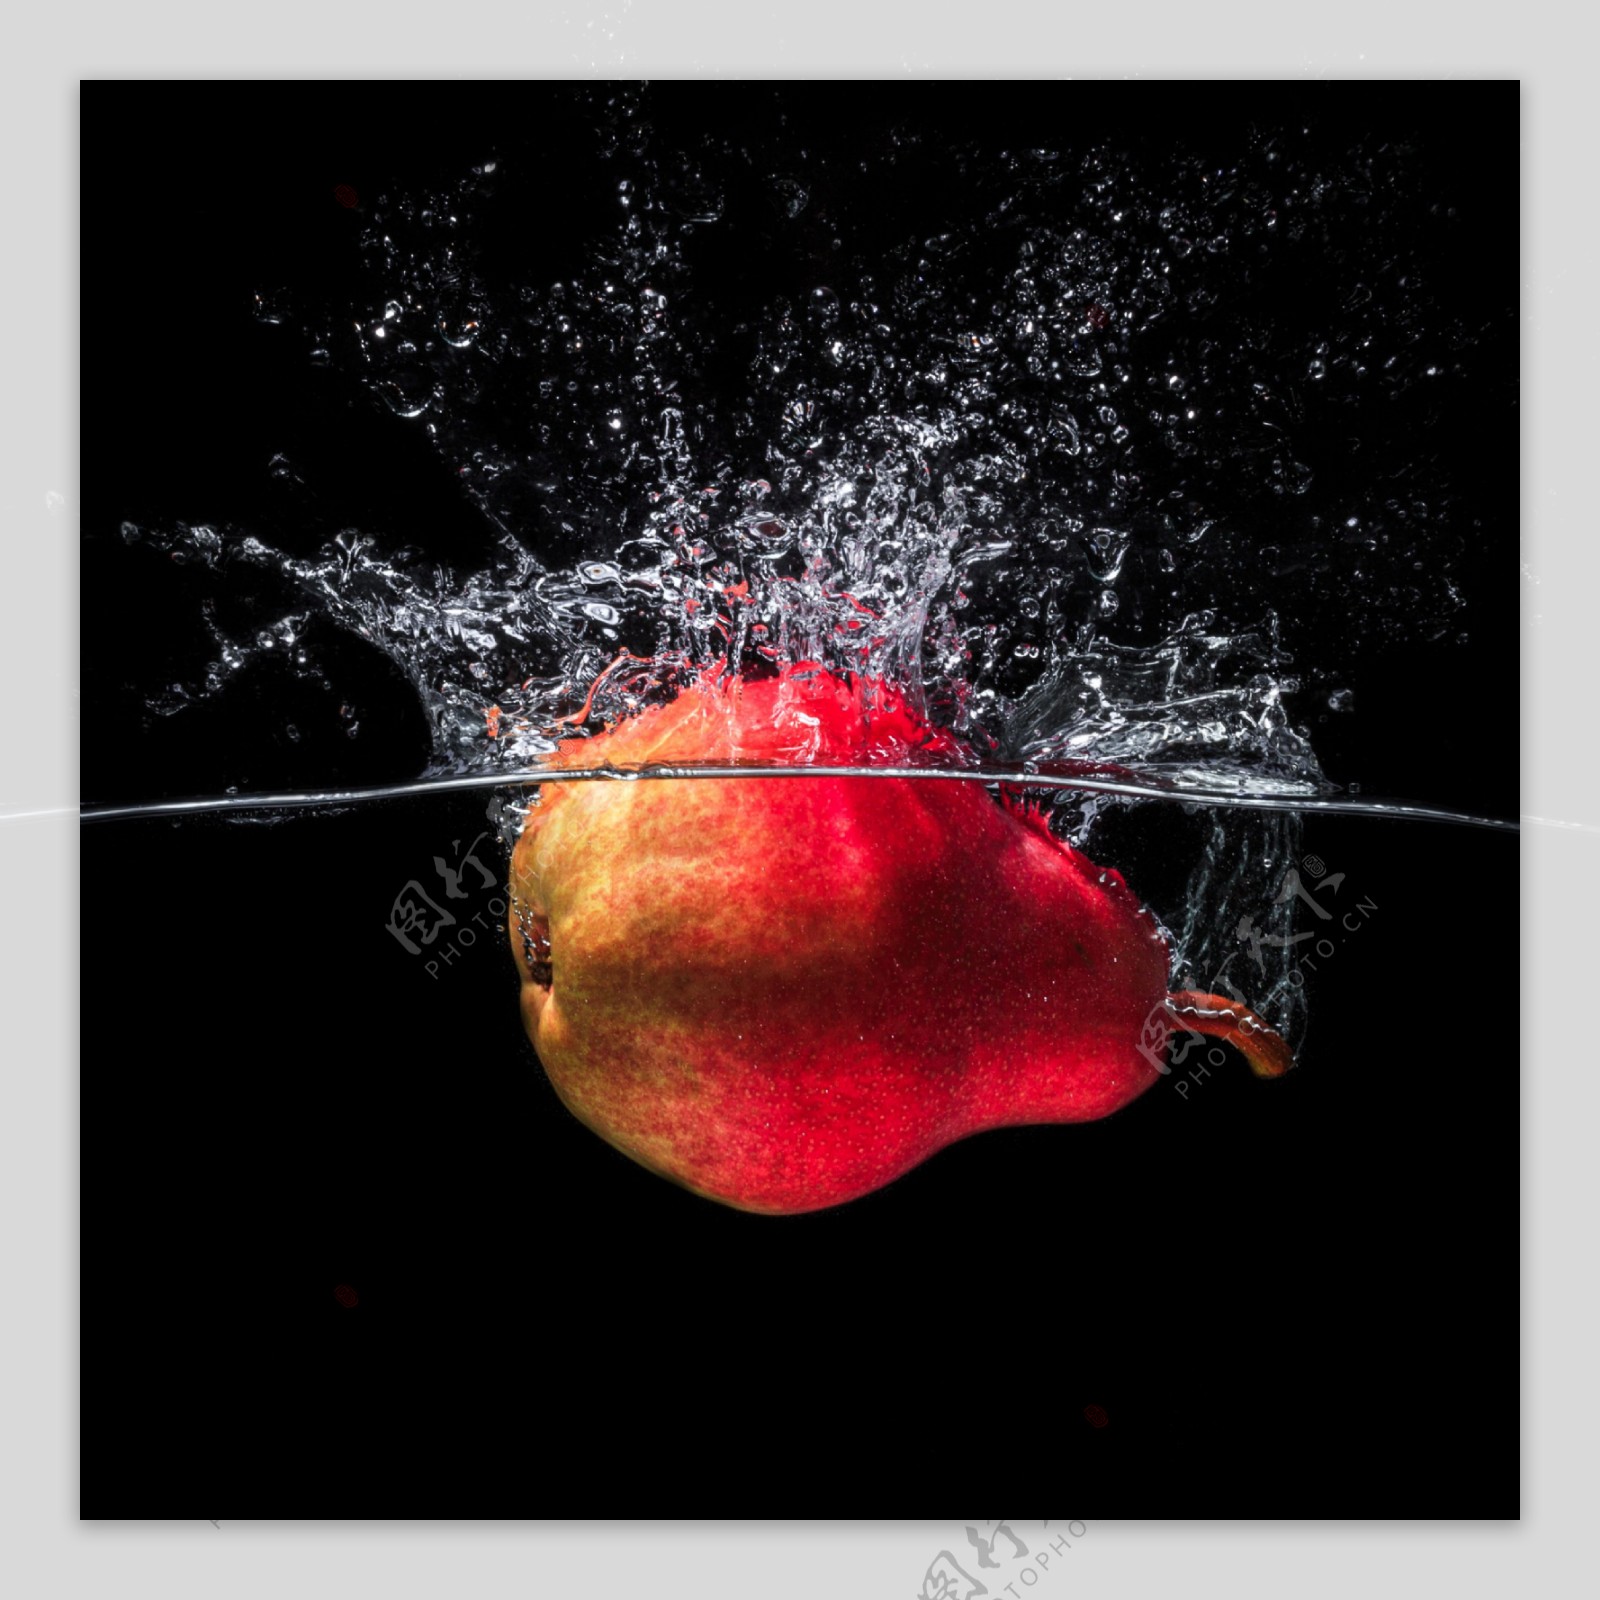 掉进水里的新鲜梨子图片